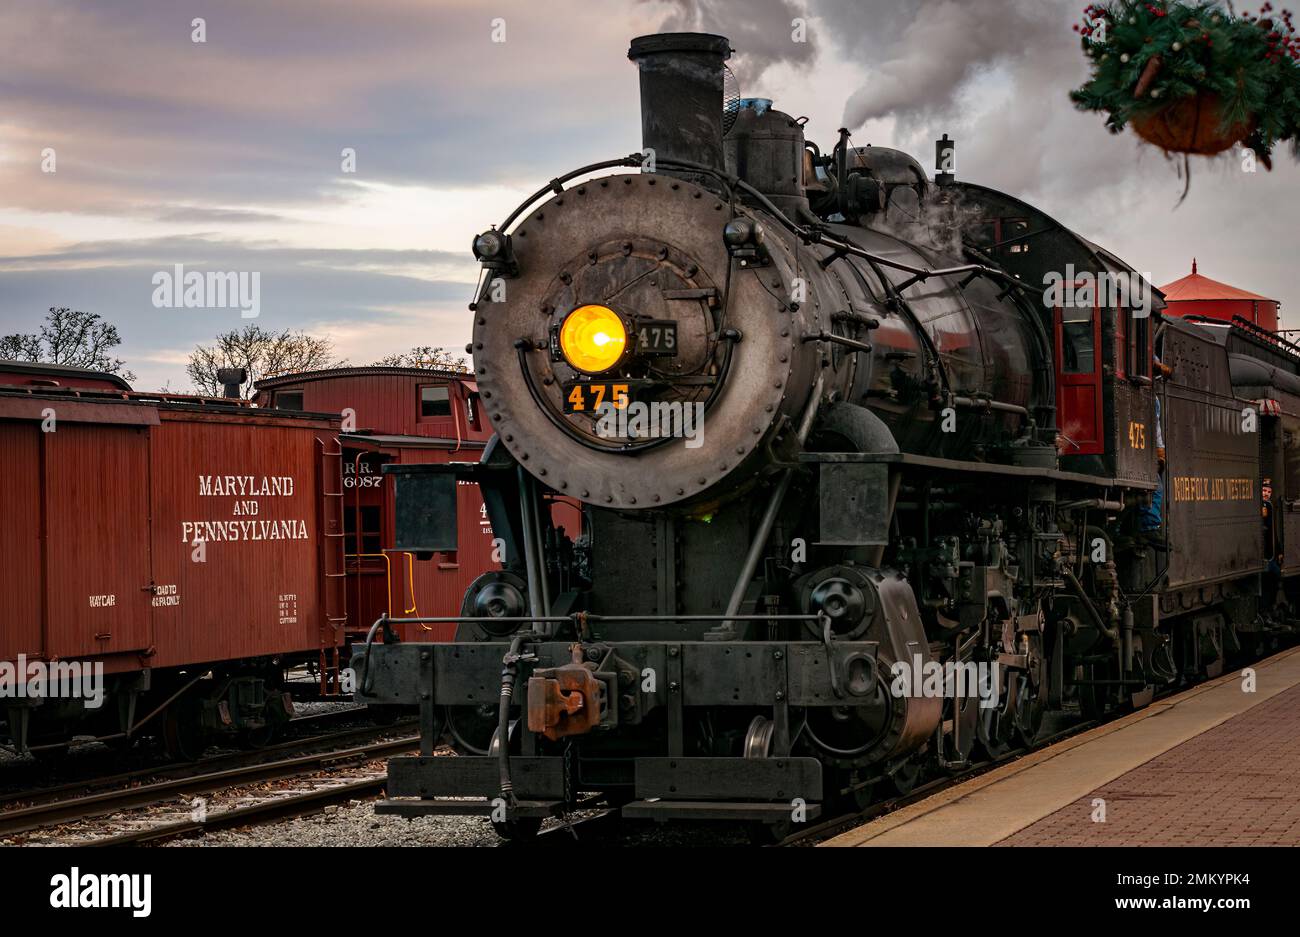 Strasburg, Pennsylvanie, 27 décembre 2022 - Vue sur un train de voyageurs à vapeur classique arrivant dans une gare qui soufflait de fumée et de vapeur, le jour d'hiver Banque D'Images